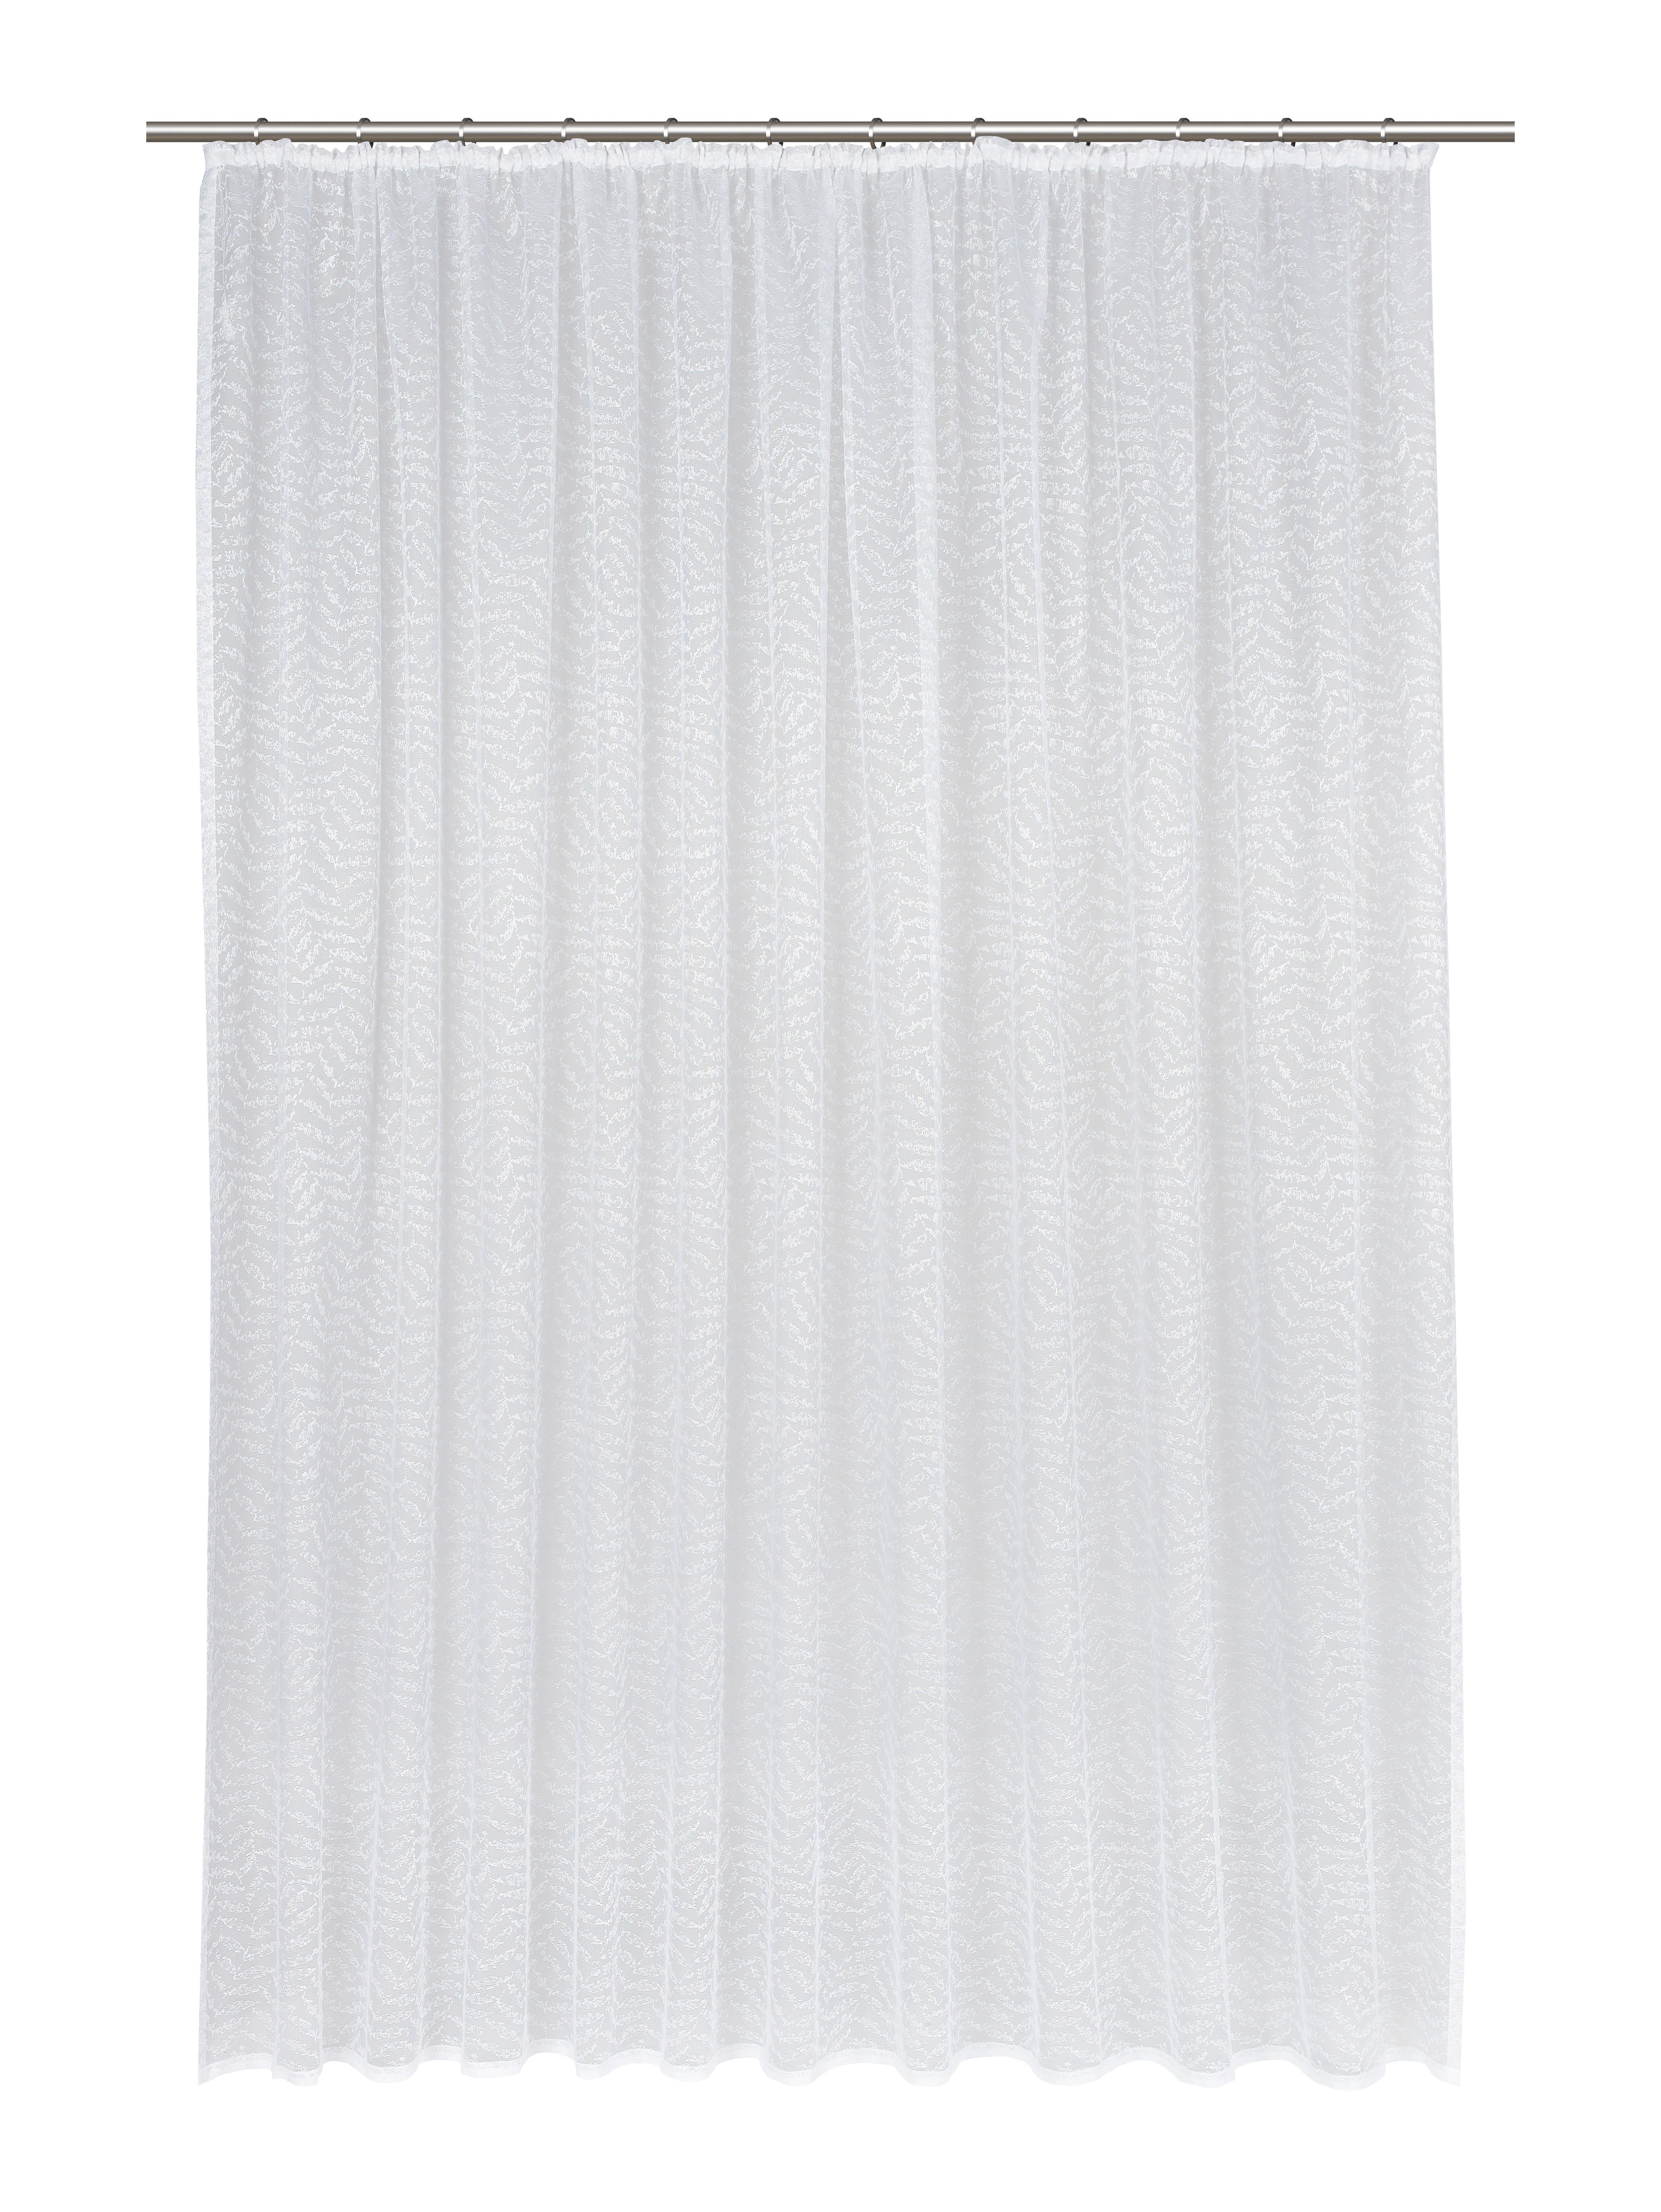 Kusová Záclona Rita Store 3, 300/245cm - bílá, Konvenční, textil (300/245cm) - Modern Living